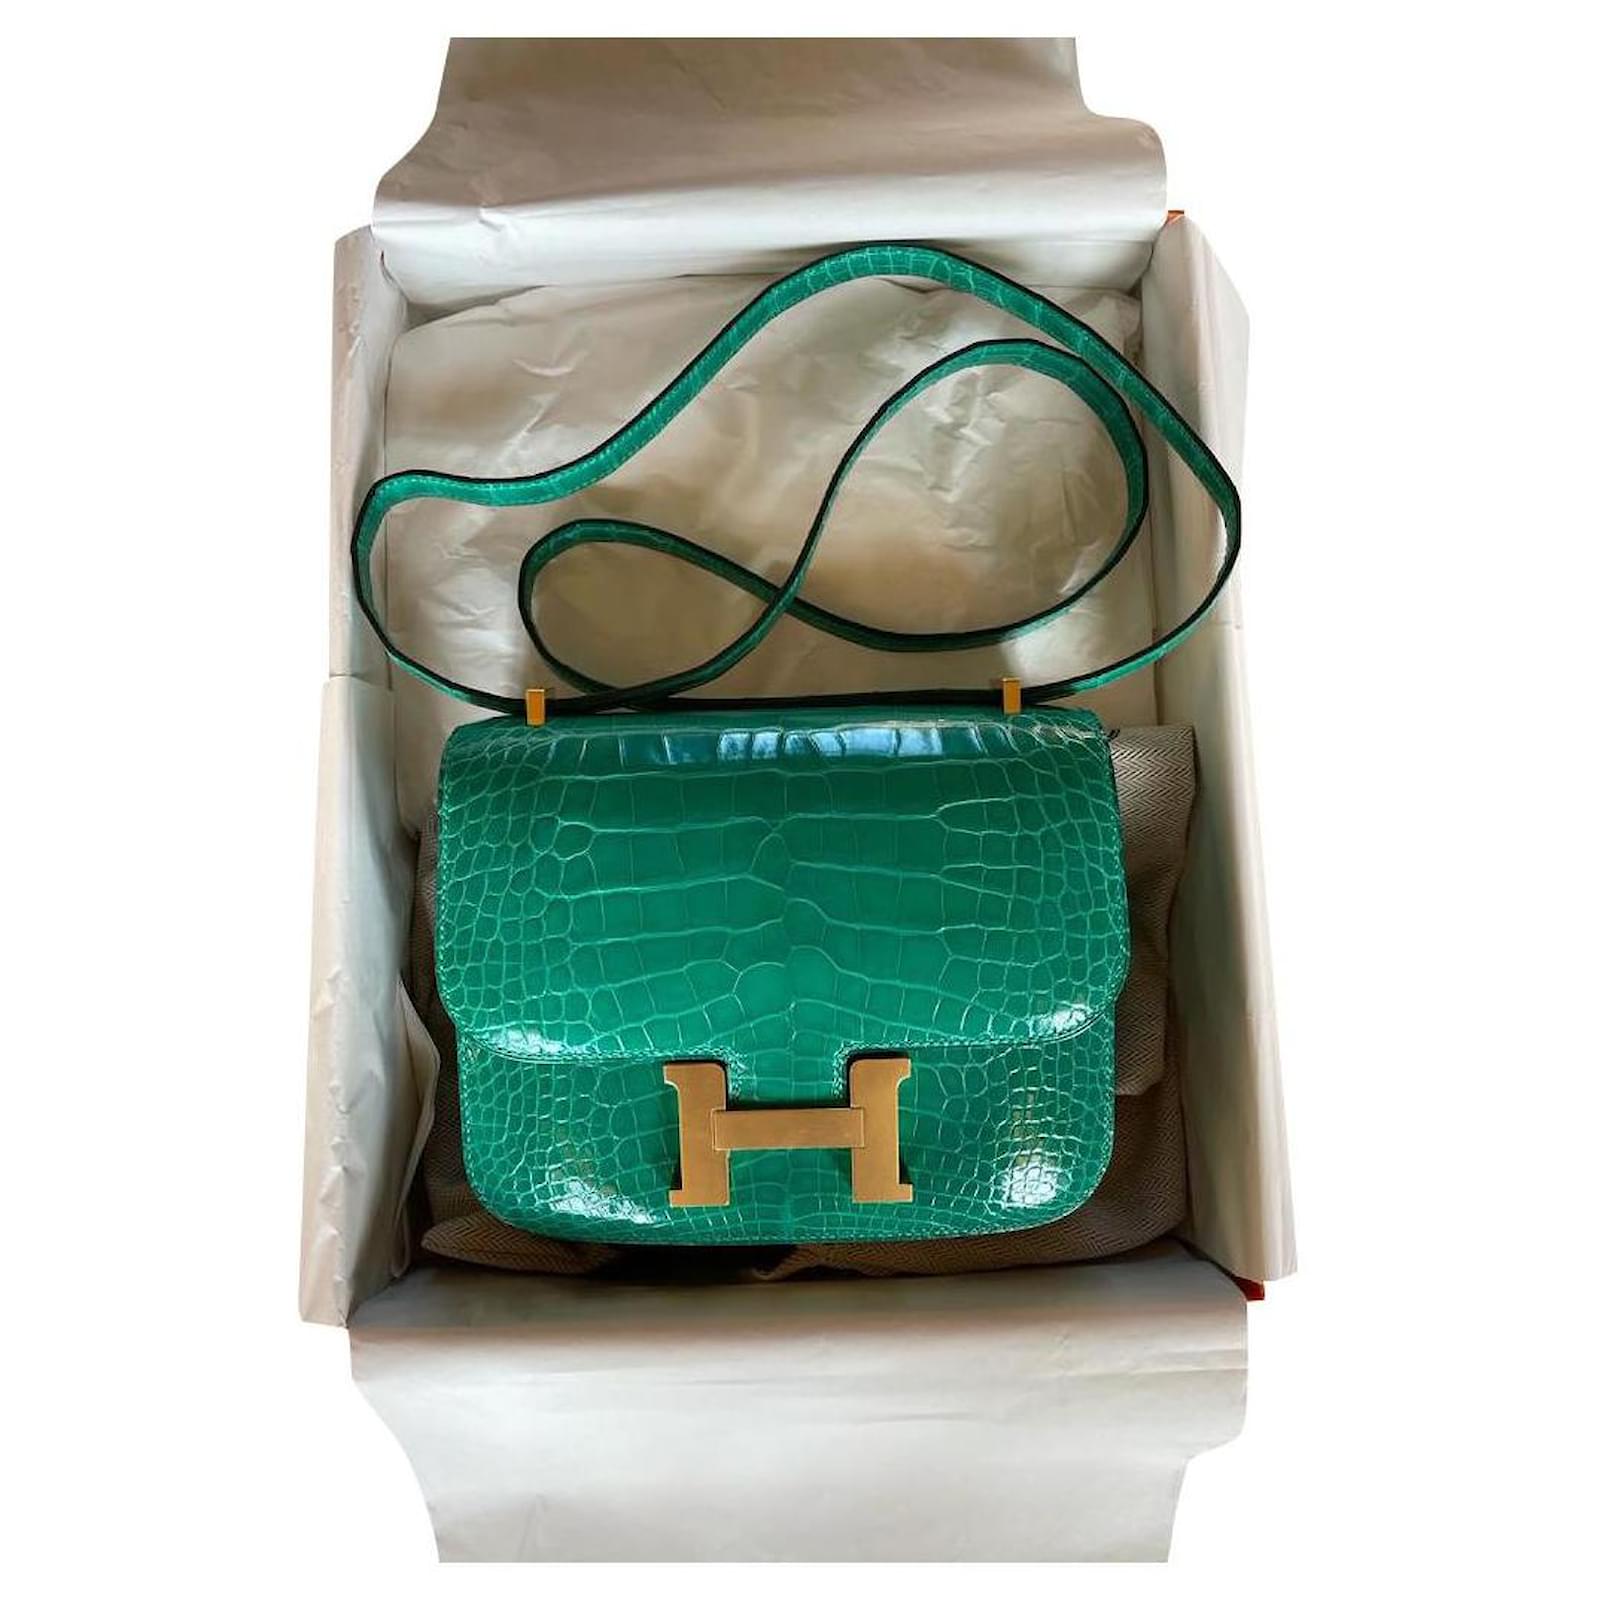 My Hermes Constance 18 vert jade : r/handbags